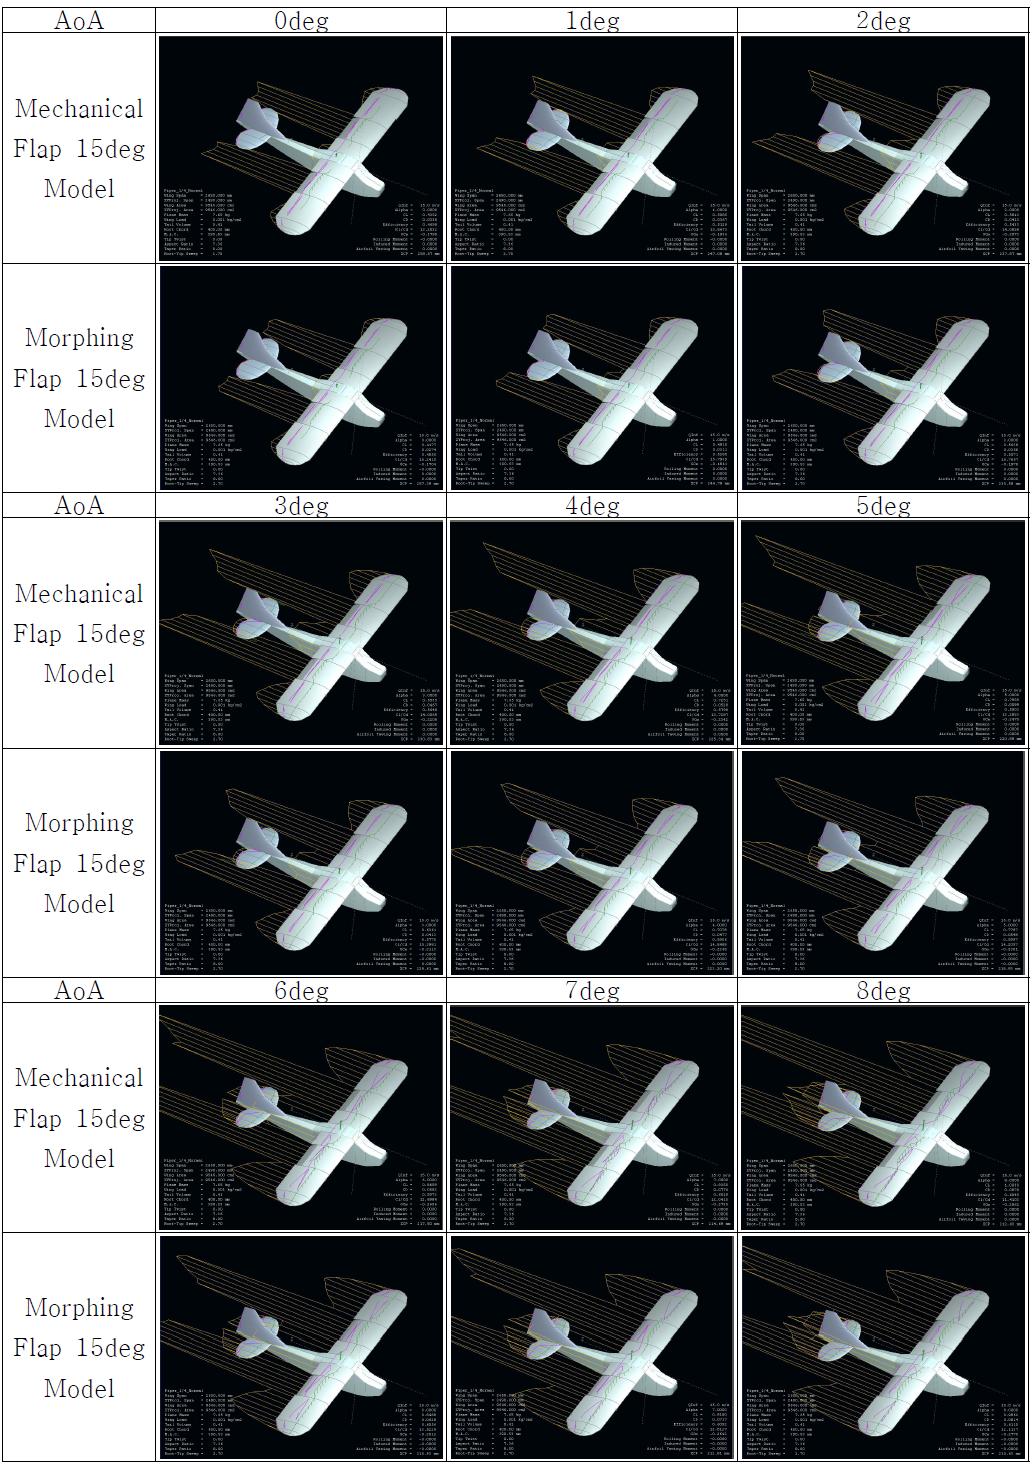 Full Model Simulation (Cl, Cd) : Mechanical Flap 15deg vs. Morphing Flap 15deg